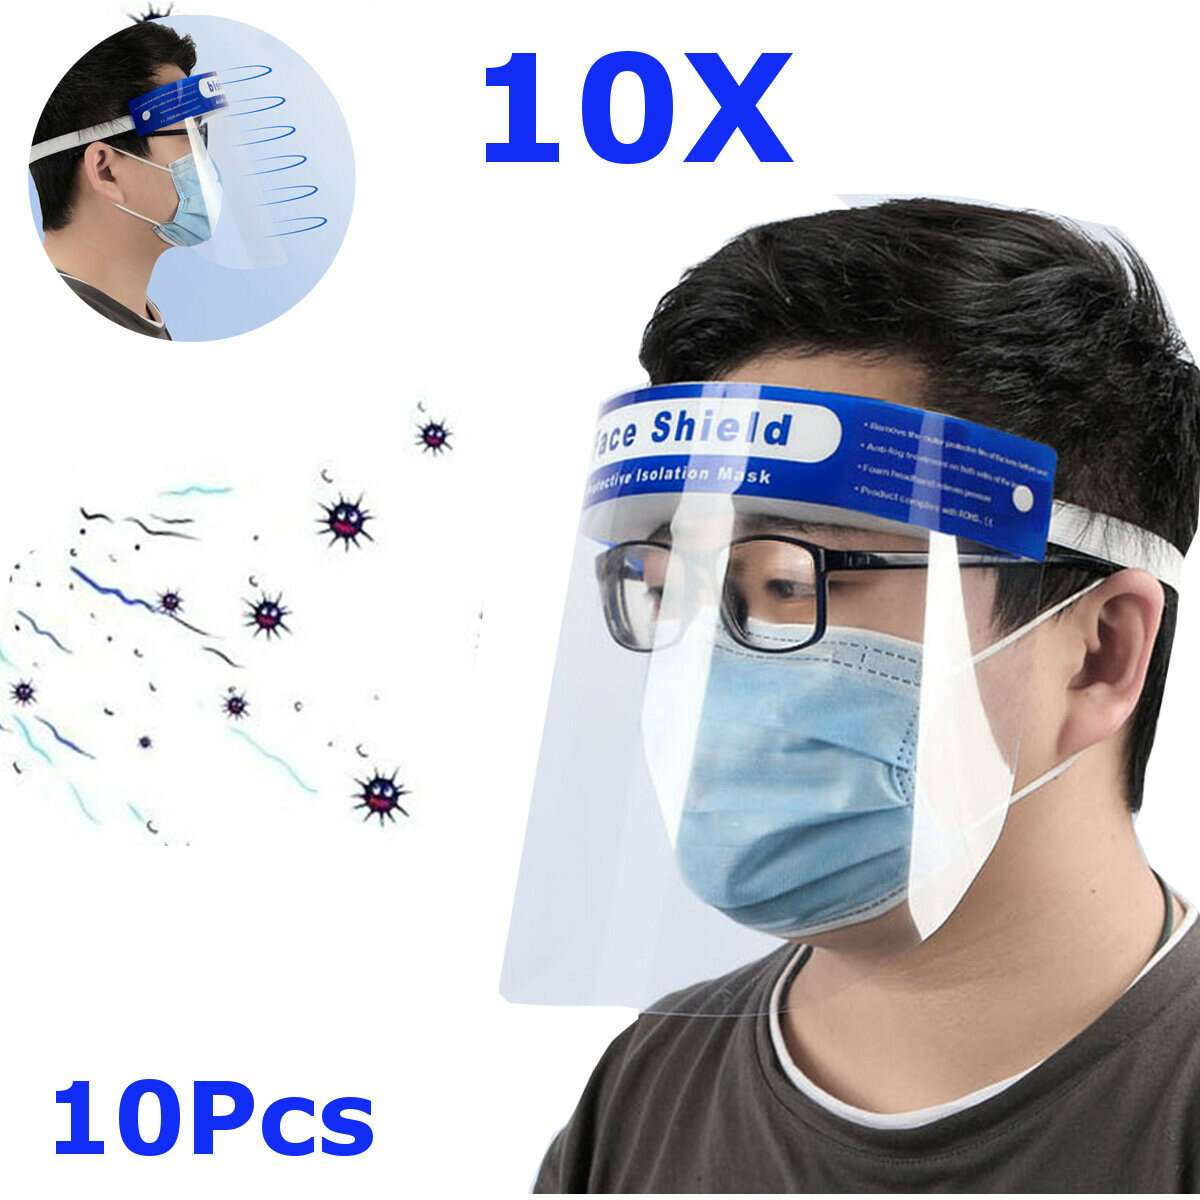 

10Pcs Transparent Adjustable Full Face Shield Plastic Anti-fog Anti-spit Protective Mask